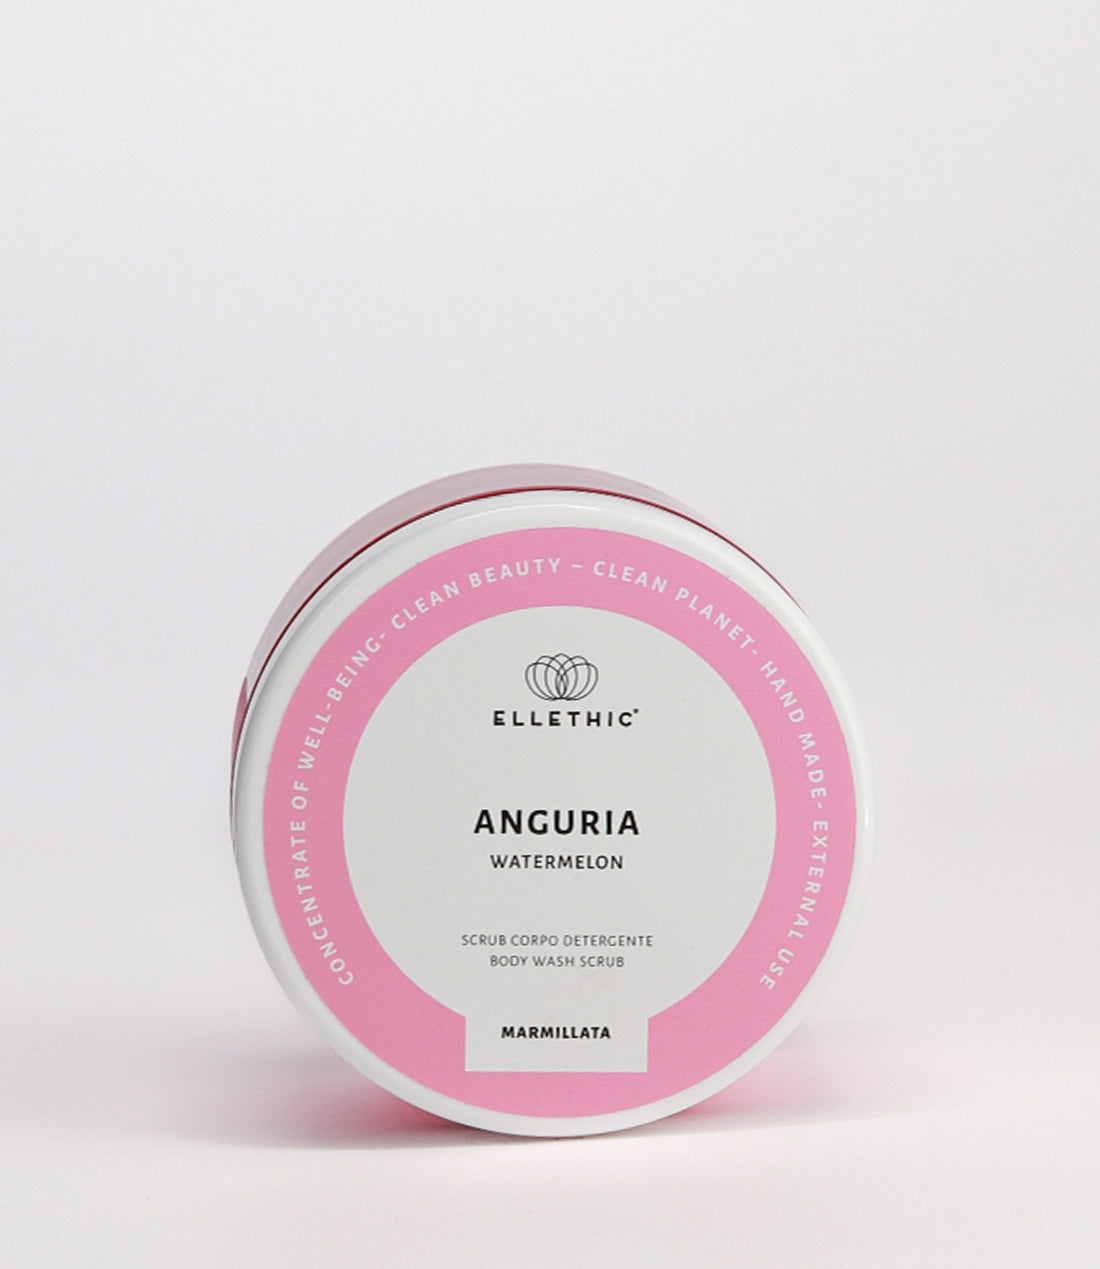 Scrub corpo detergente Anguria 500g - Marmillata